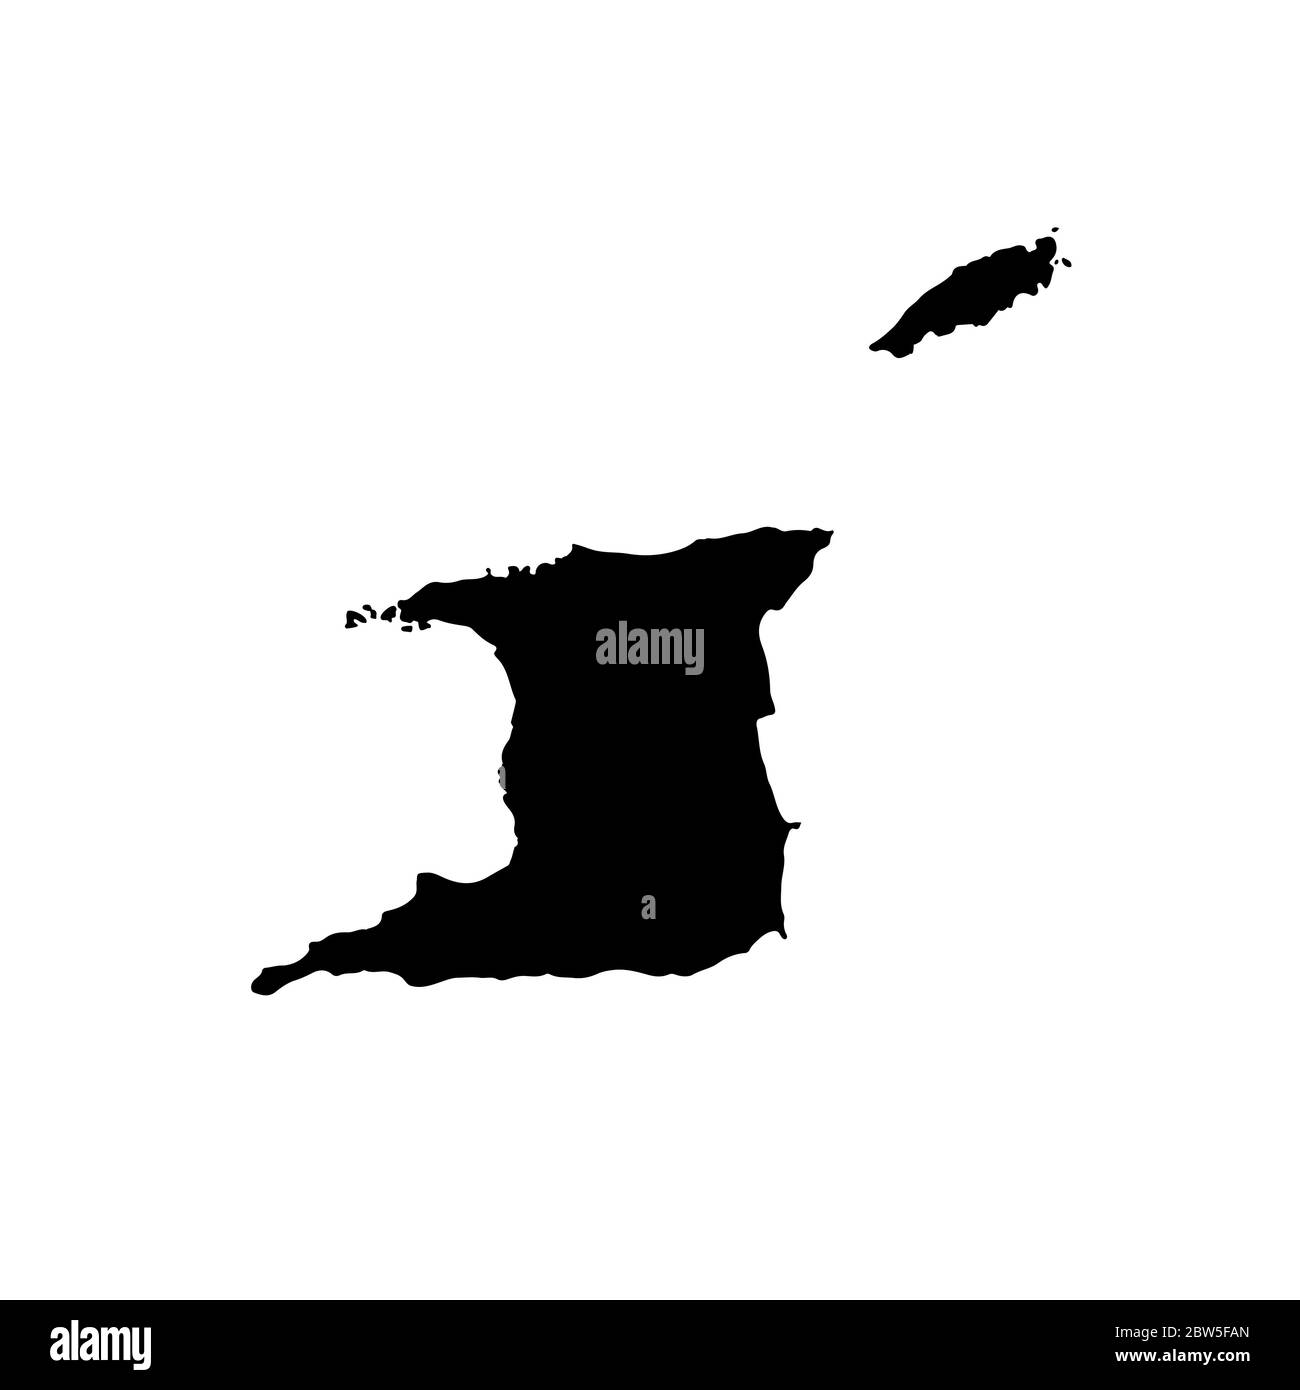 Mappa vettoriale Trinidad e Tobago. Illustrazione vettoriale isolata. Nero su sfondo bianco. Illustrazione EPS 10. Illustrazione Vettoriale